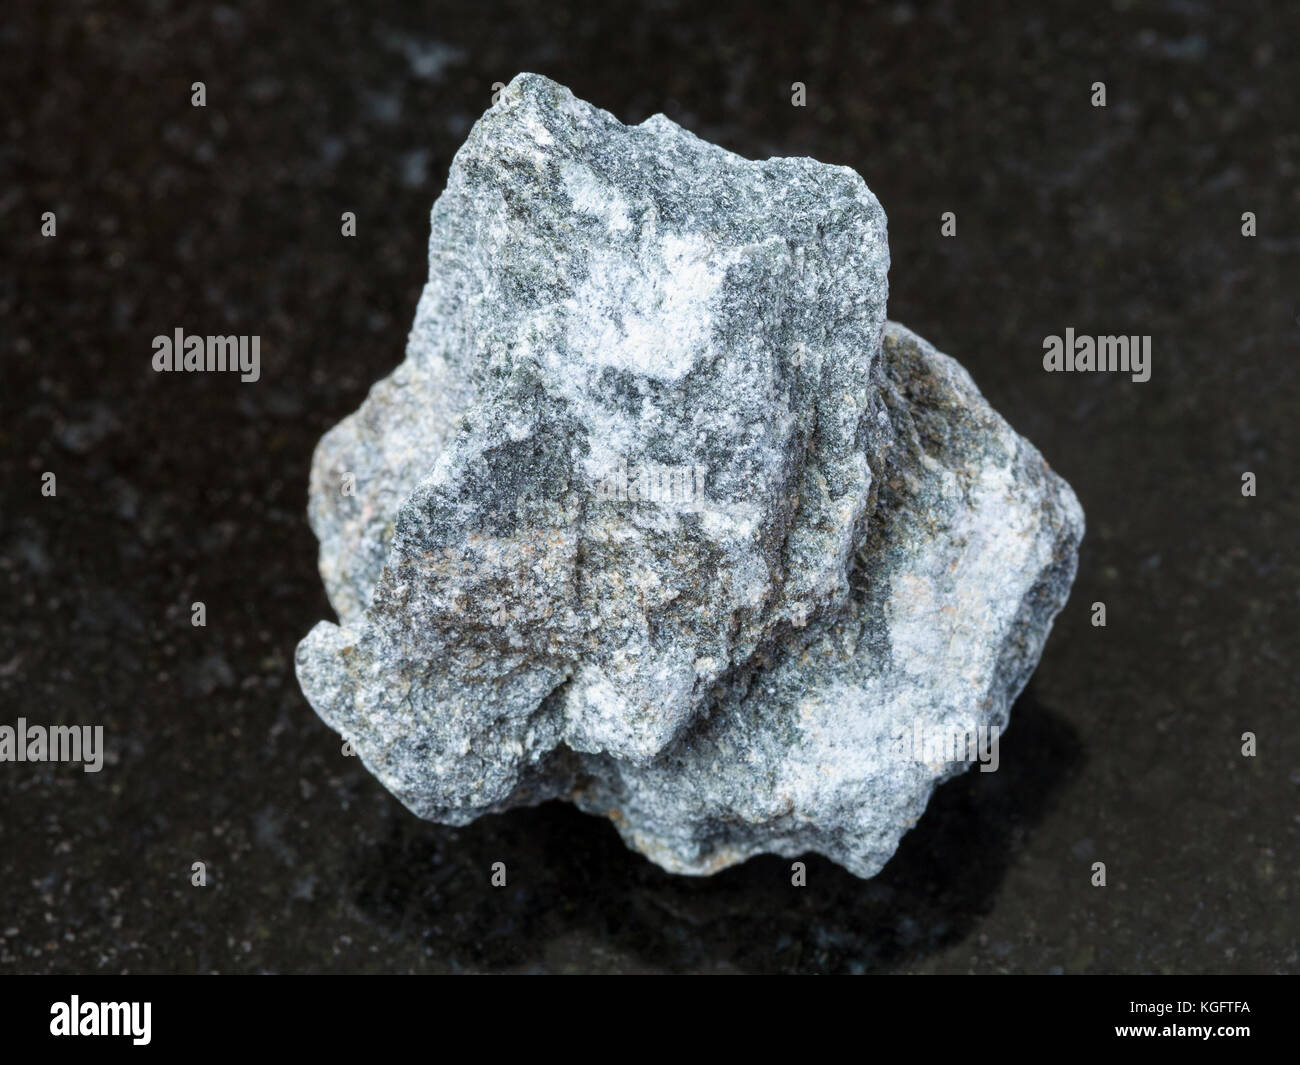 Makroaufnahmen von natürlichen Mineralgestein Muster - Rohstoff Speckstein Stein (talkum - Schiefer) auf dunklem Granit Hintergrund Stockfoto